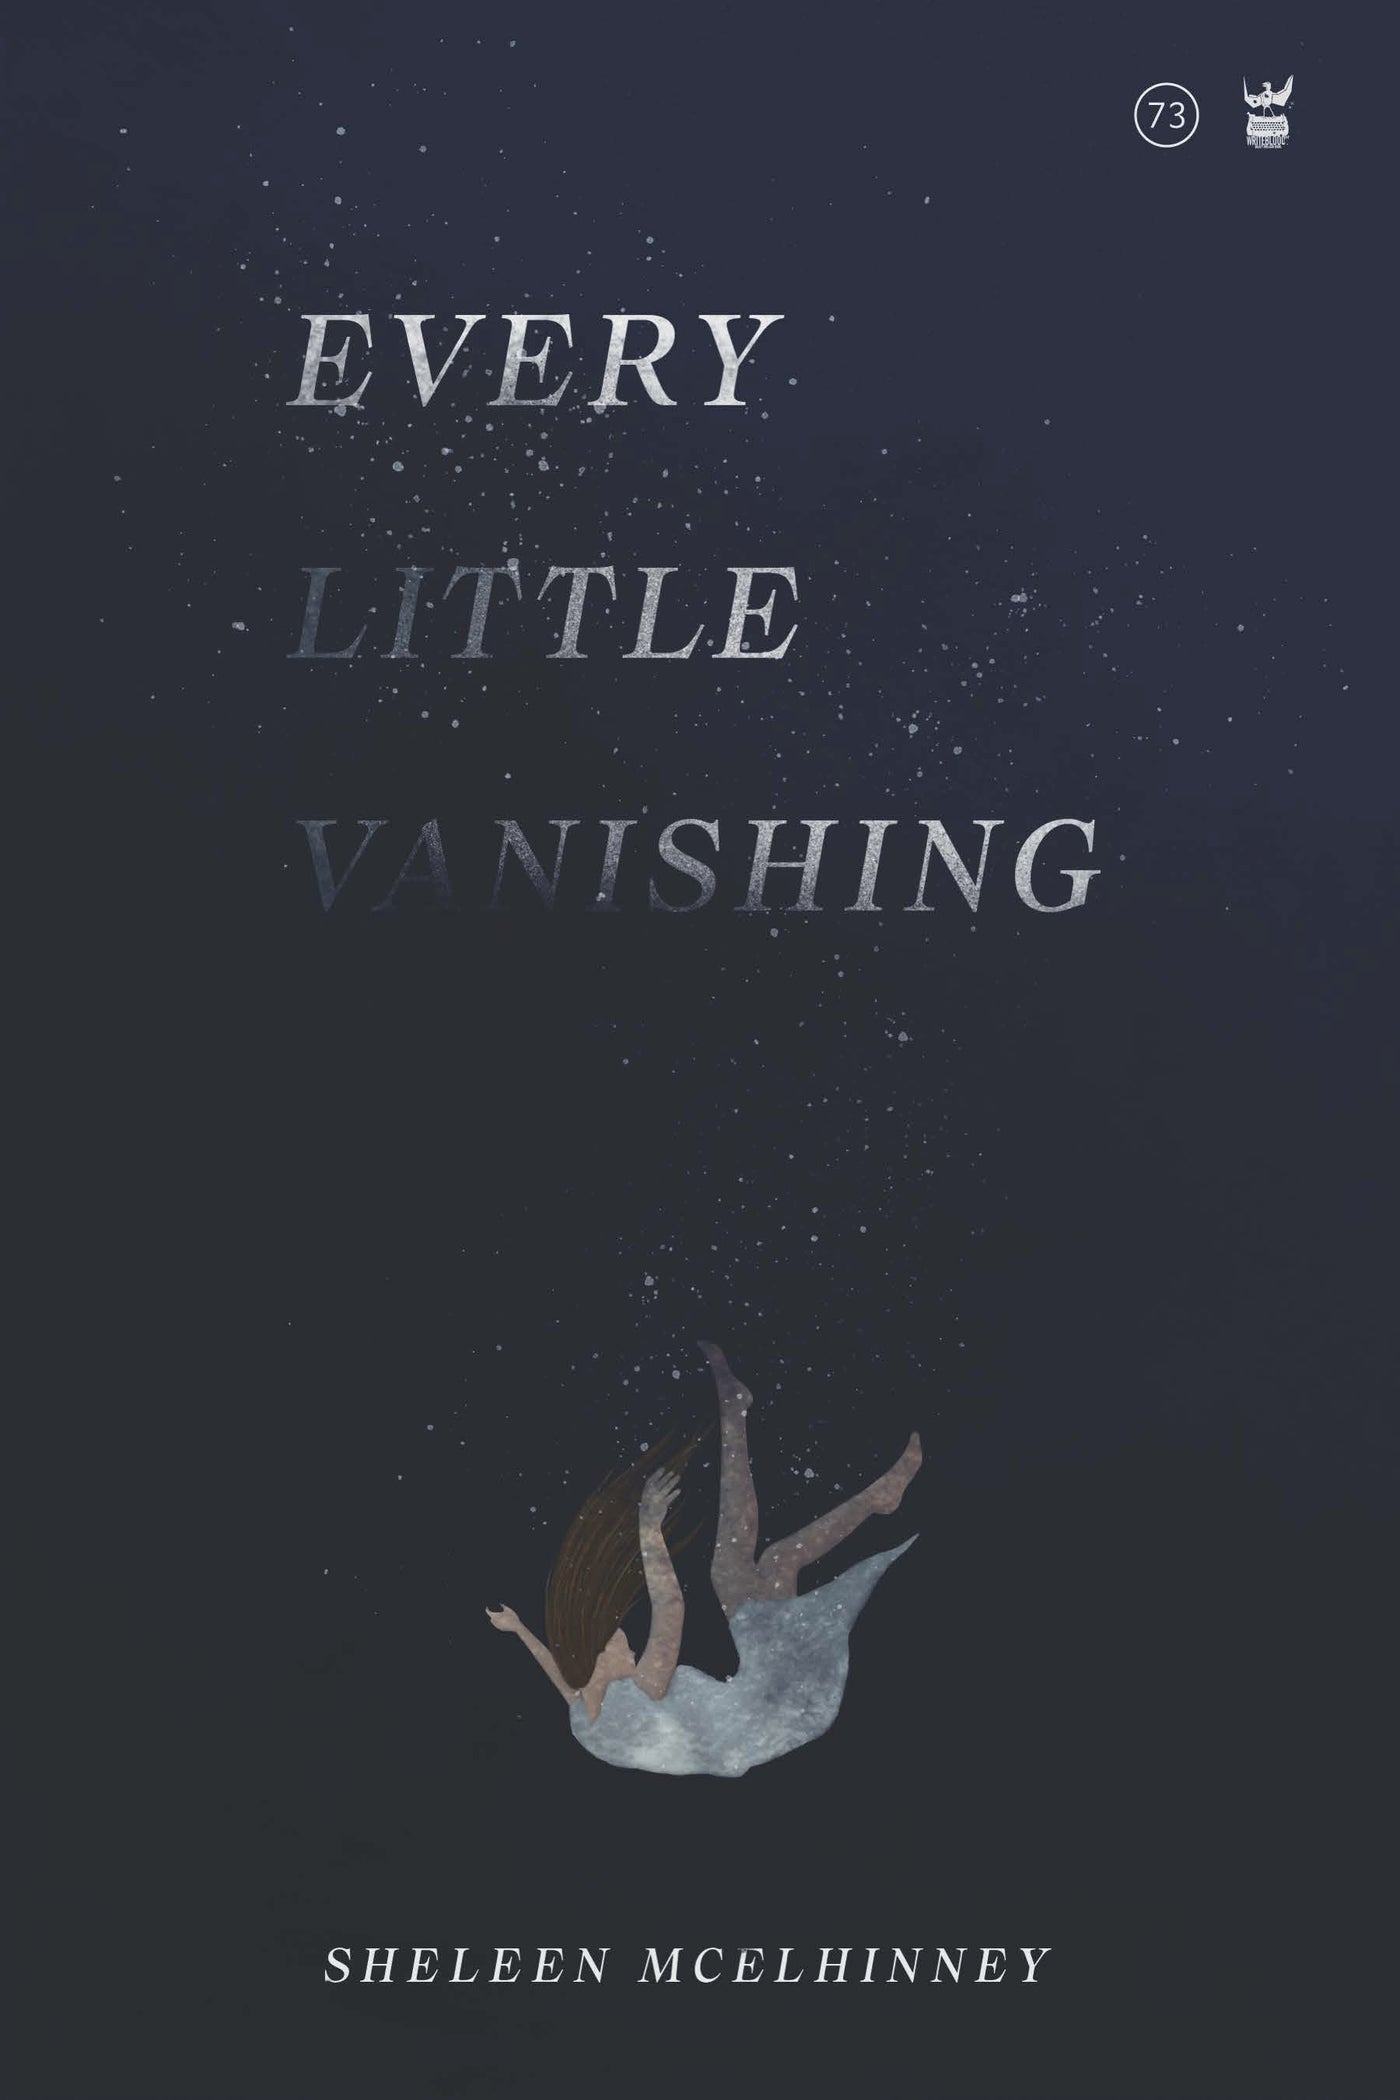 Every Little Vanishing by Sheleen McElhinney